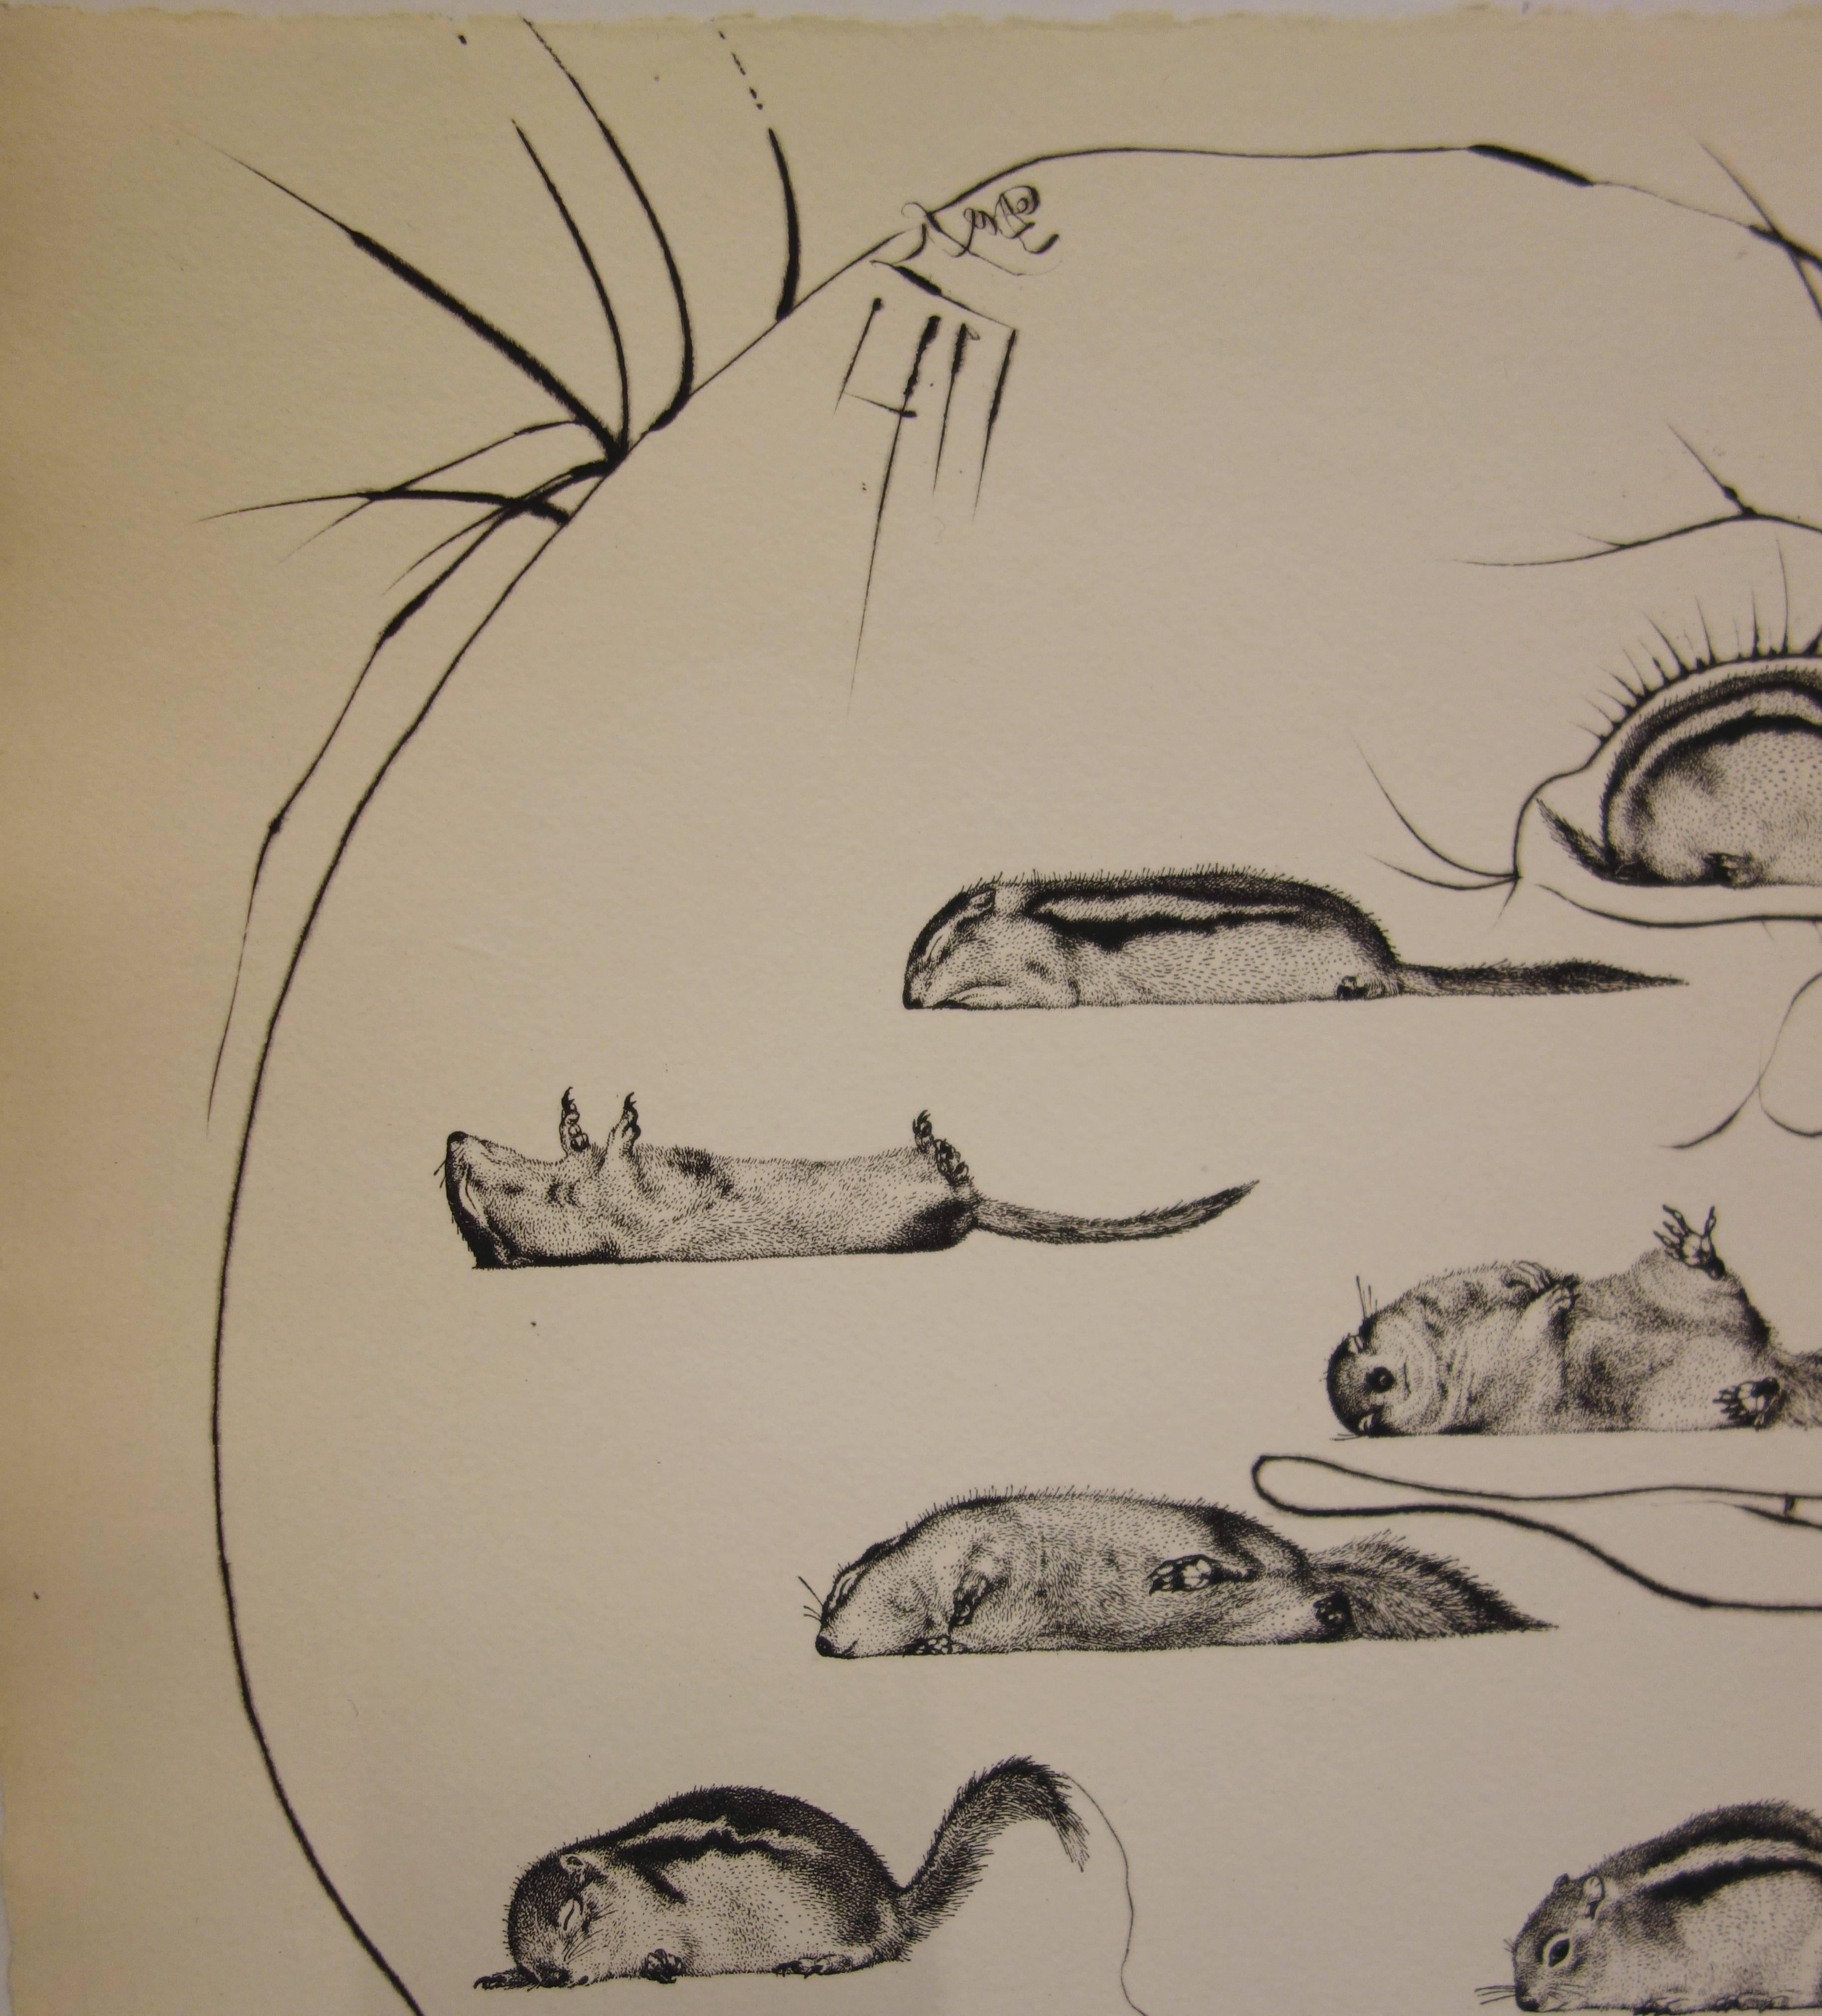 Salvador Dali (1904-1989) 
L'homme ressuscité par l'holographie de l'écureuil (1973) 

Gravure originale sur vélin d'Auvergne
Signé à la main au crayon
Numéroté /Z
Taille : 15,3 x 22,4 pouces (39 x 57 cm) 

Références : Catalogue raisonné Field